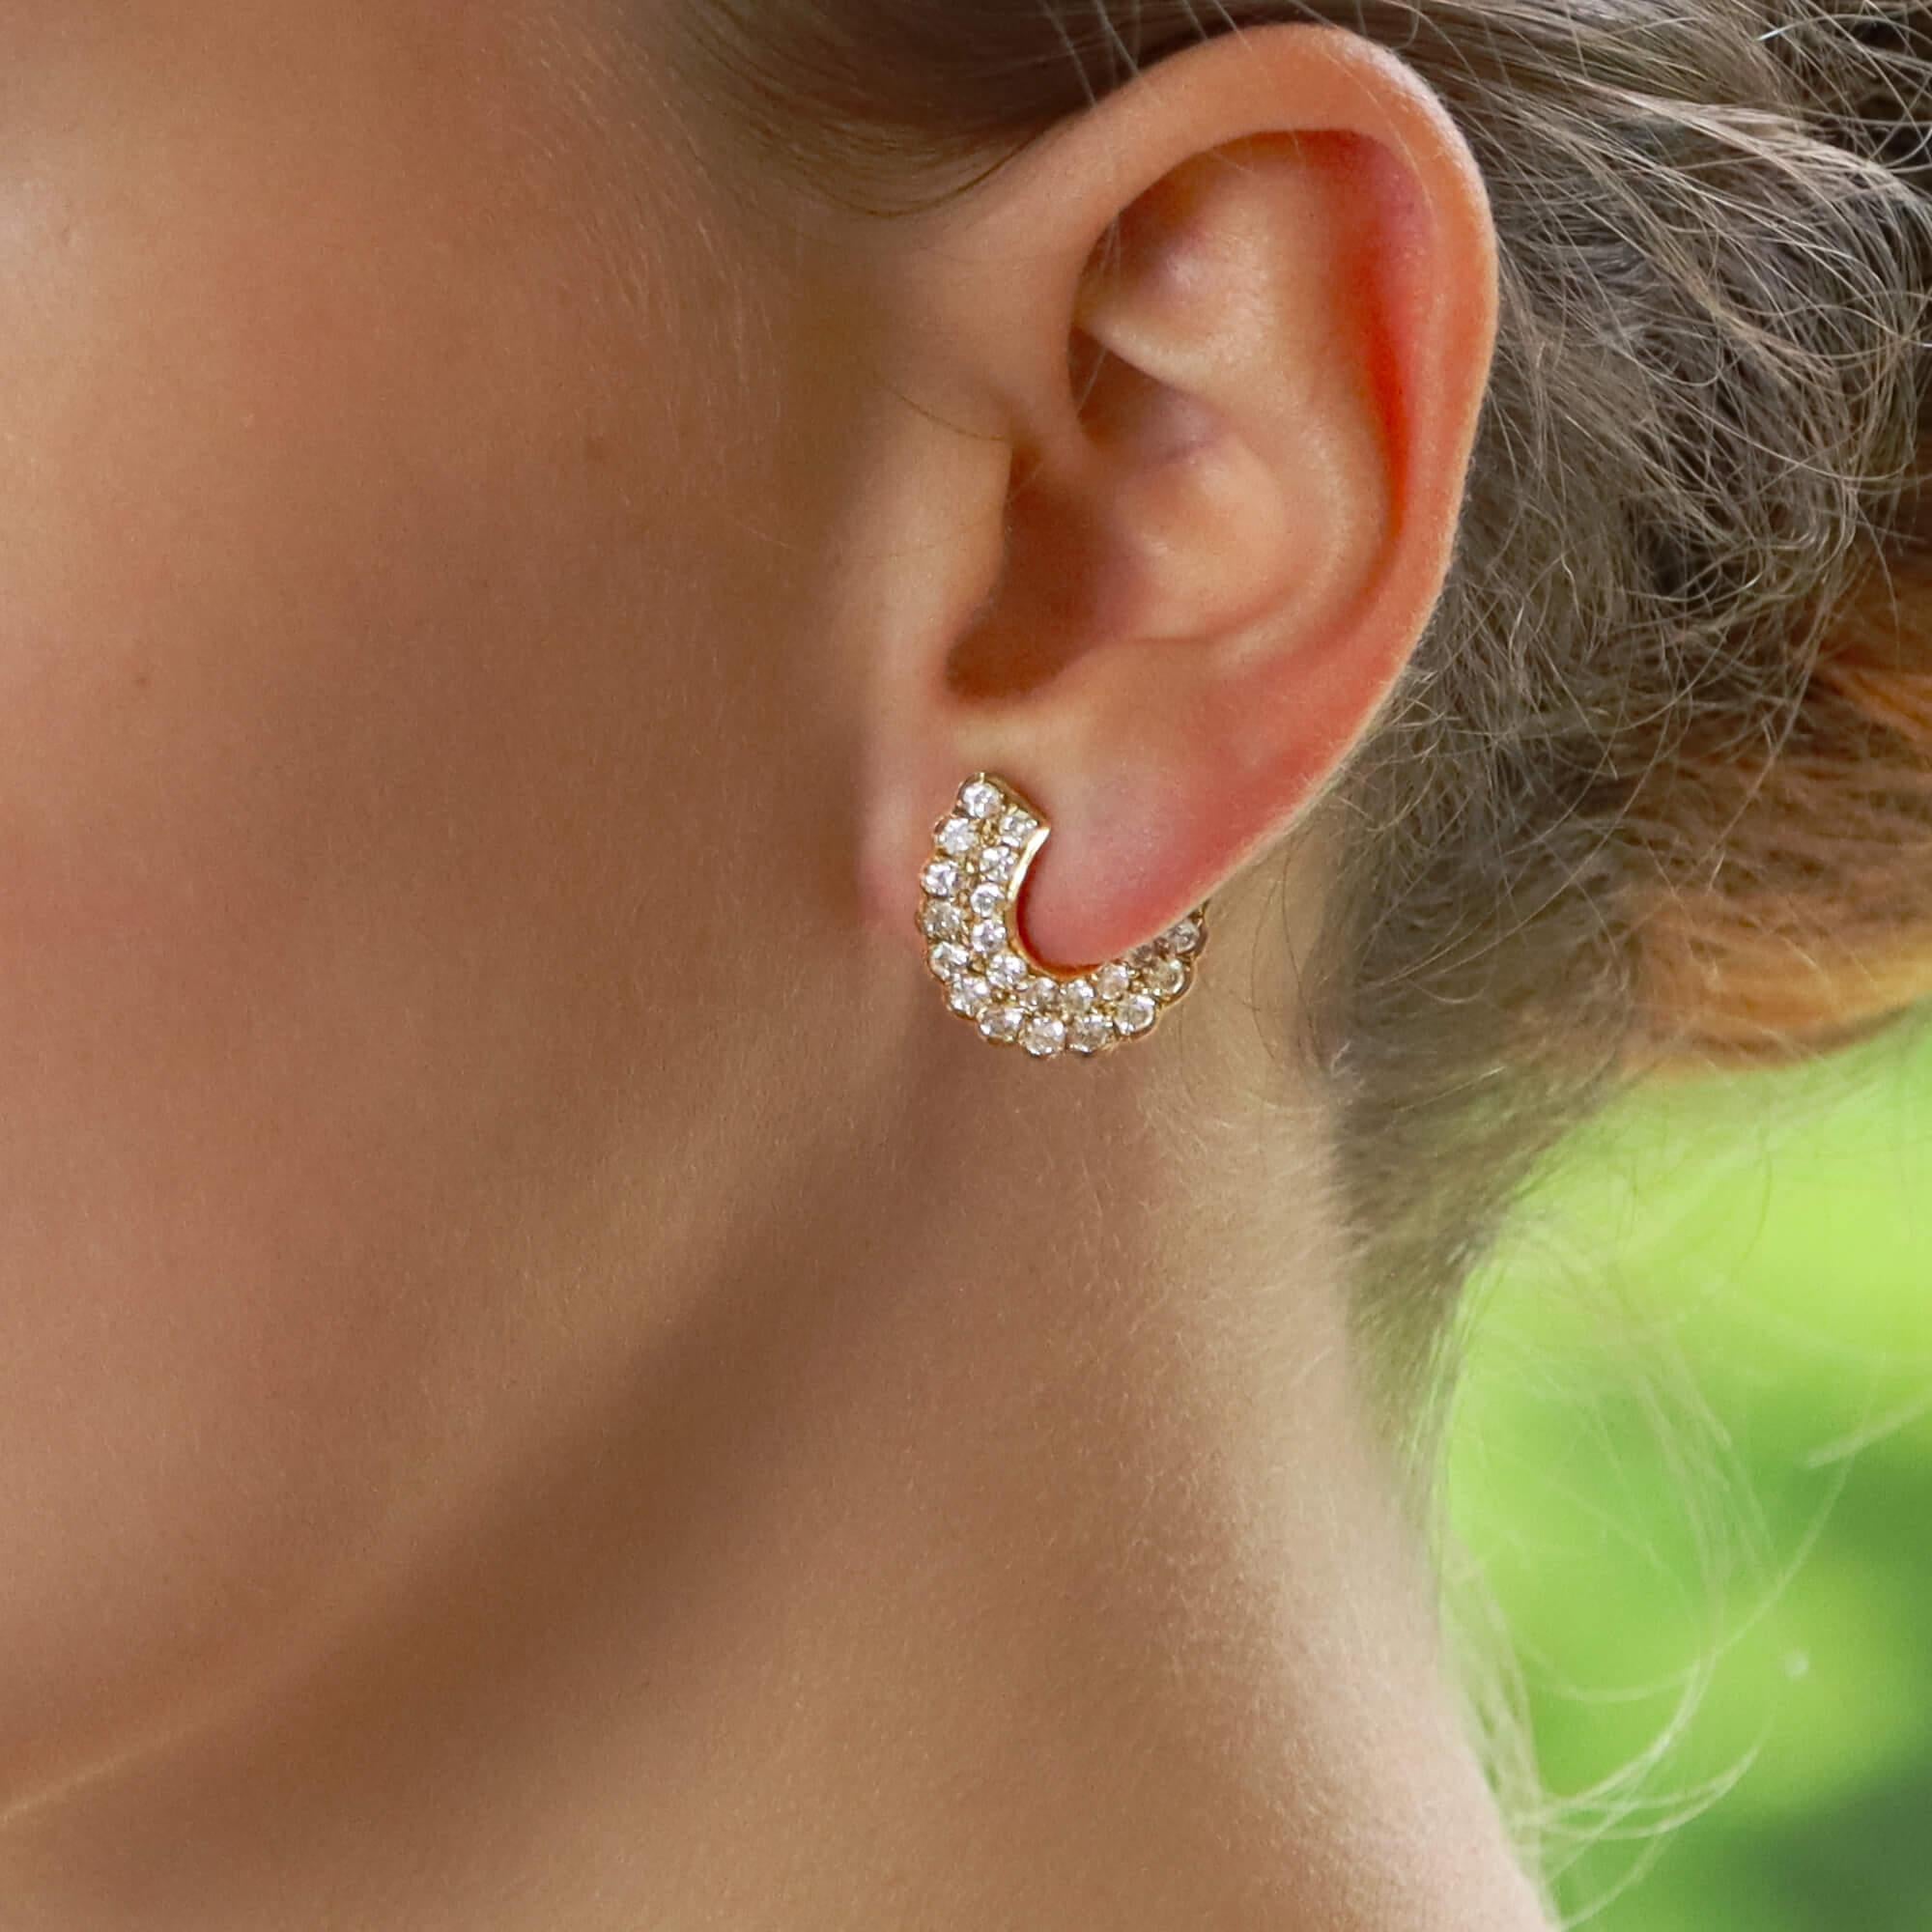 Retro Vintage Diamond 'C' Half Hoop Earrings Set in 18k Yellow Gold